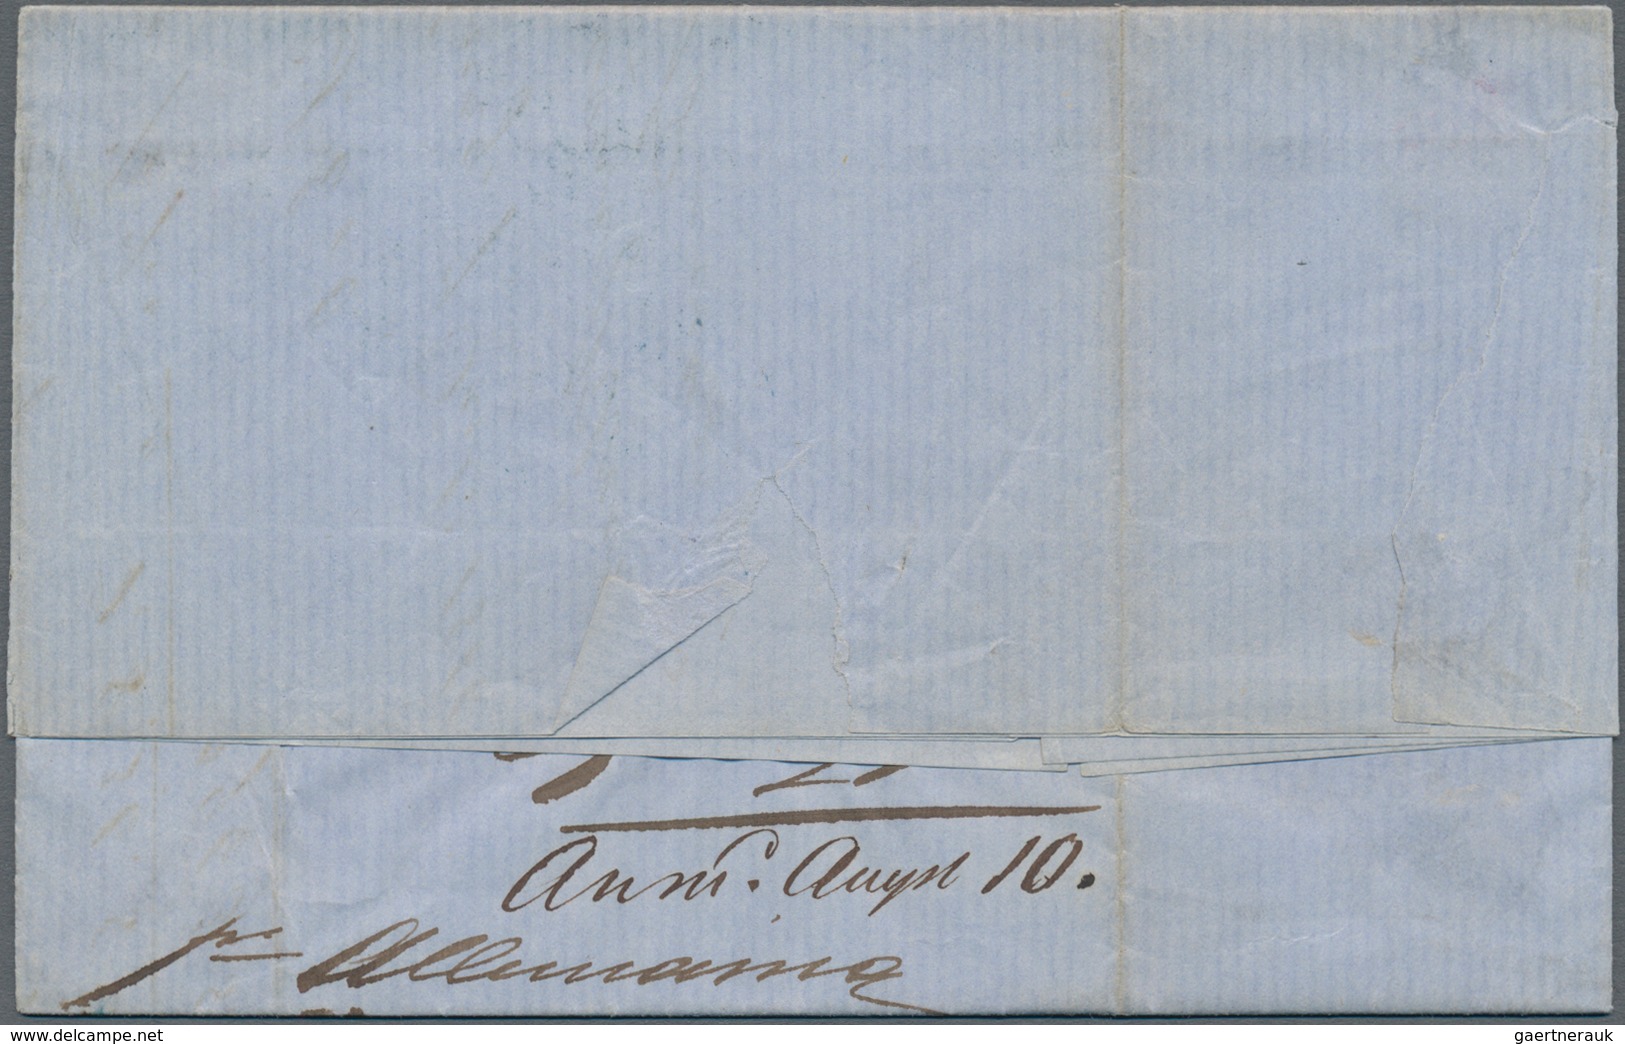 Hamburg - Marken Und Briefe: 1866, Brief Ab "HAMBURG PACKET JUL 7 - 7" Der Amerikanischen Postexpedi - Hamburg